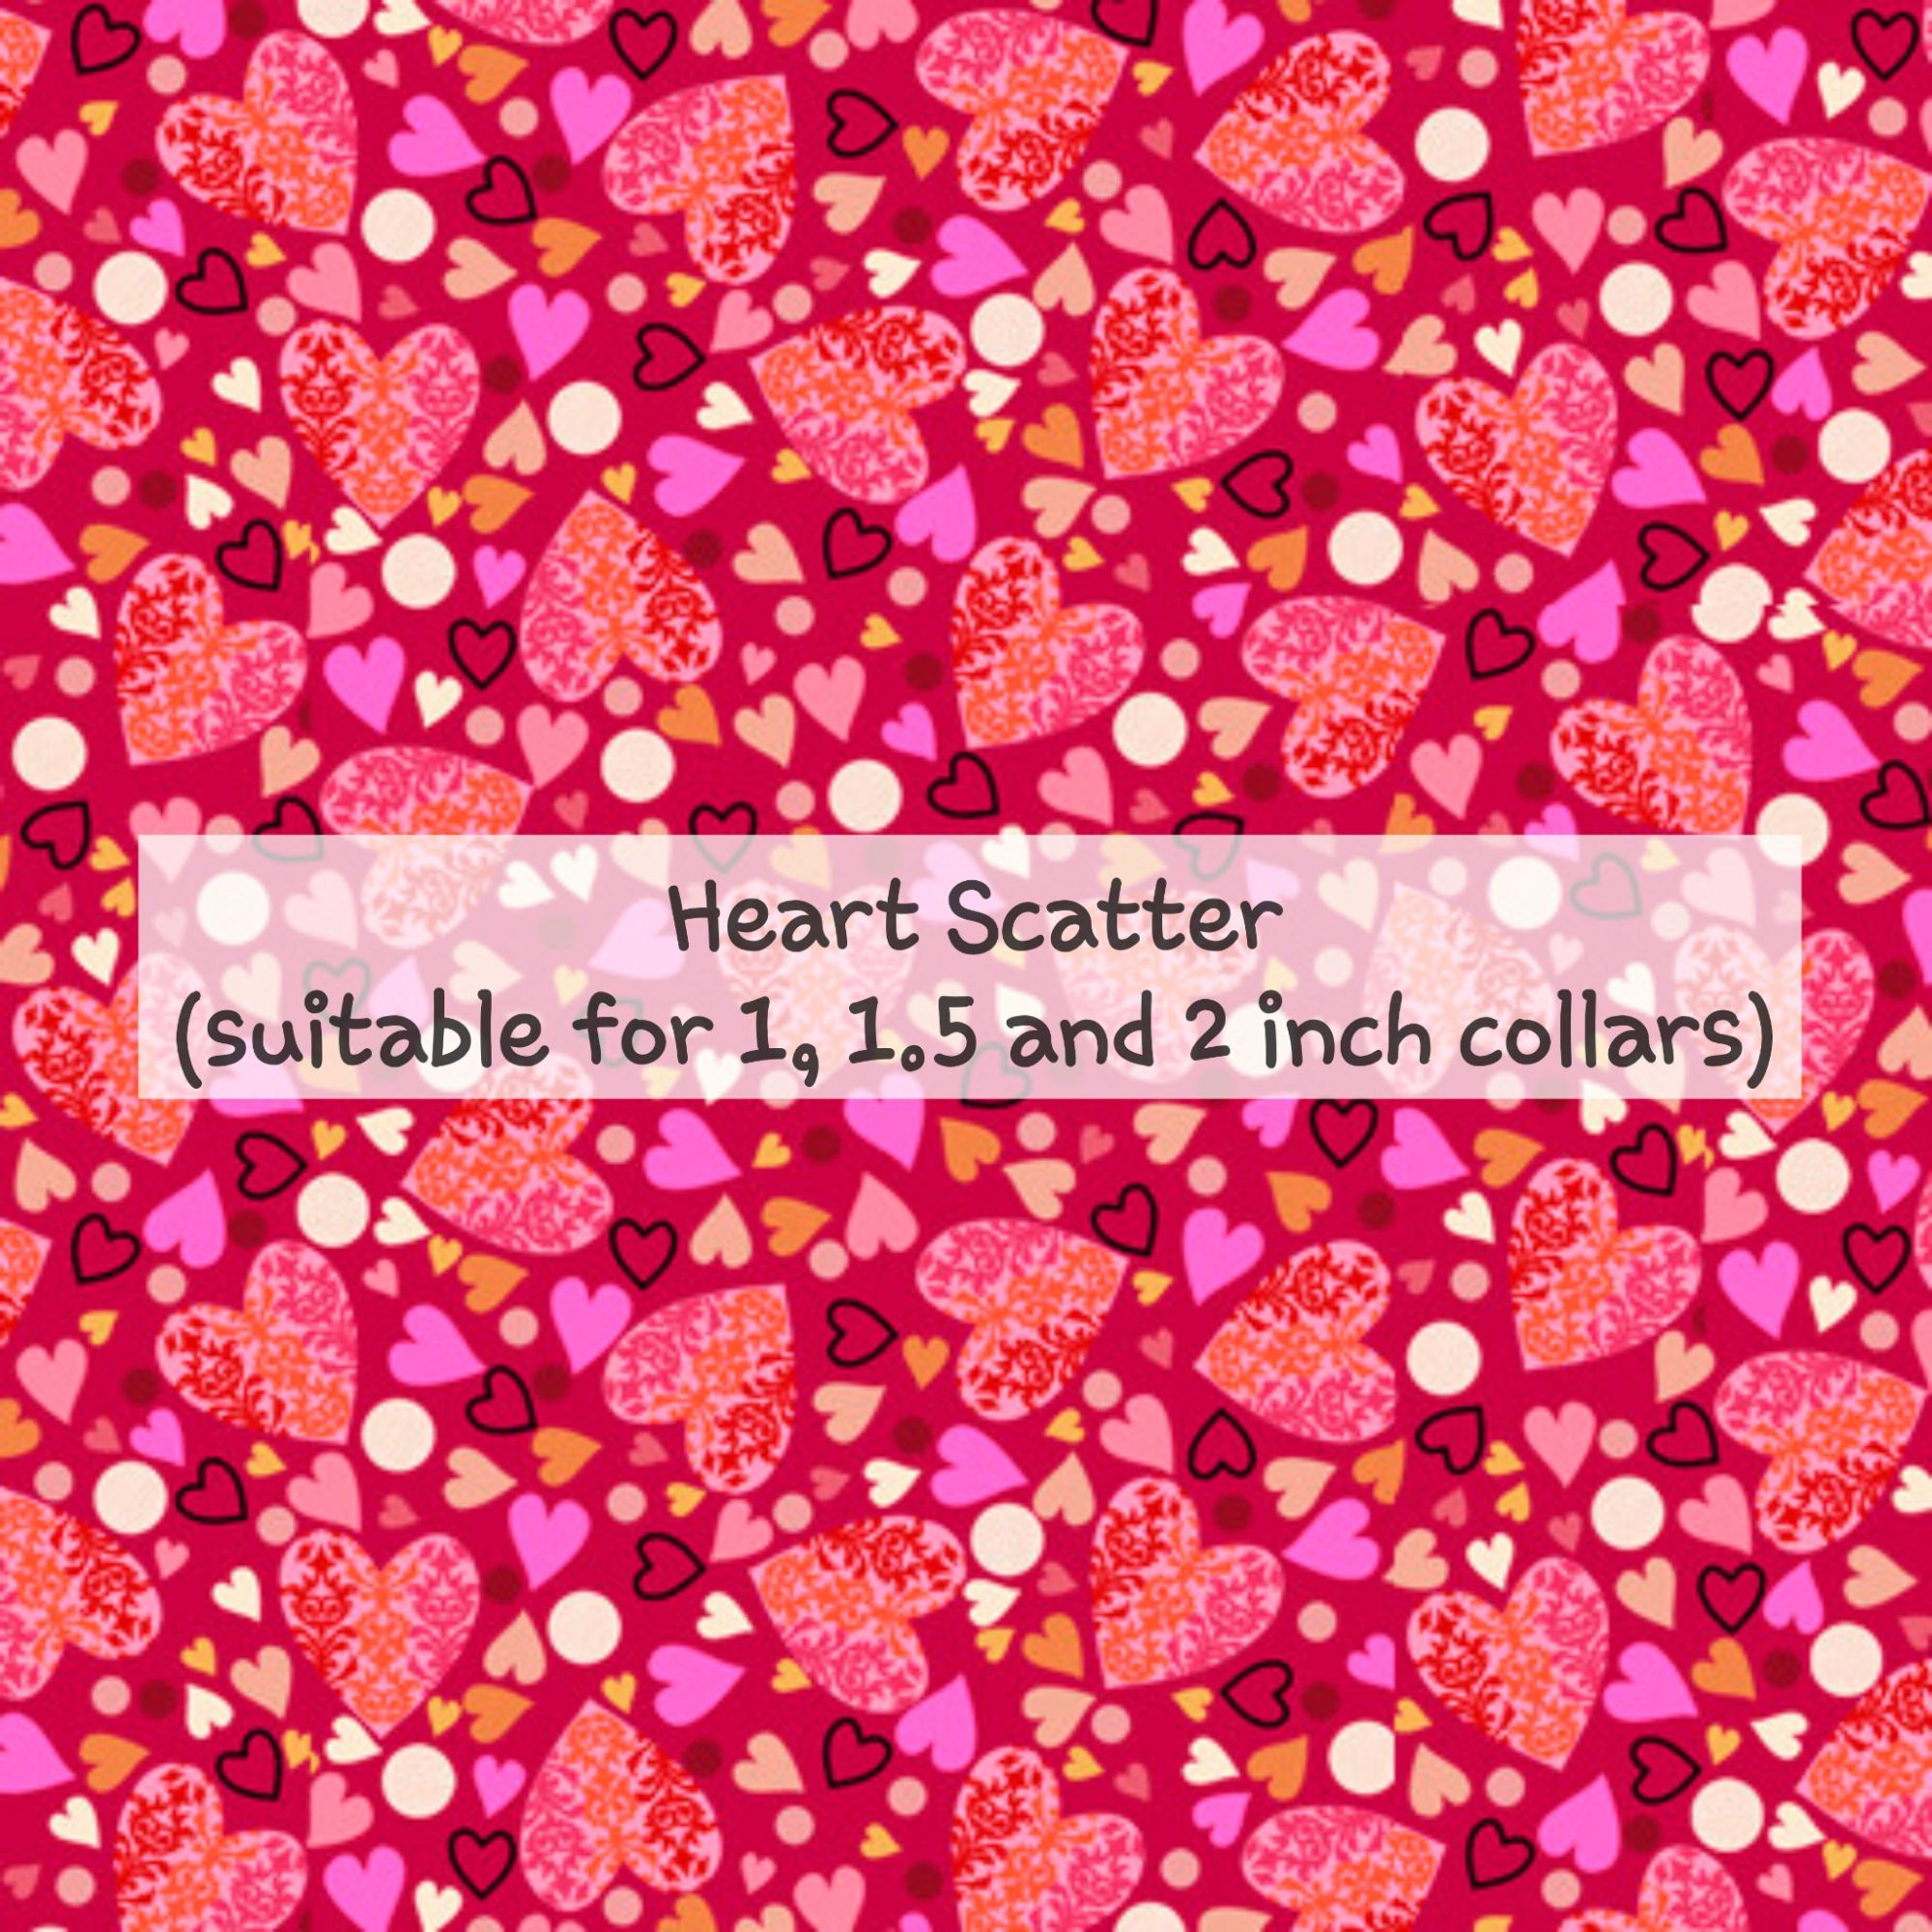 Heart Scatter